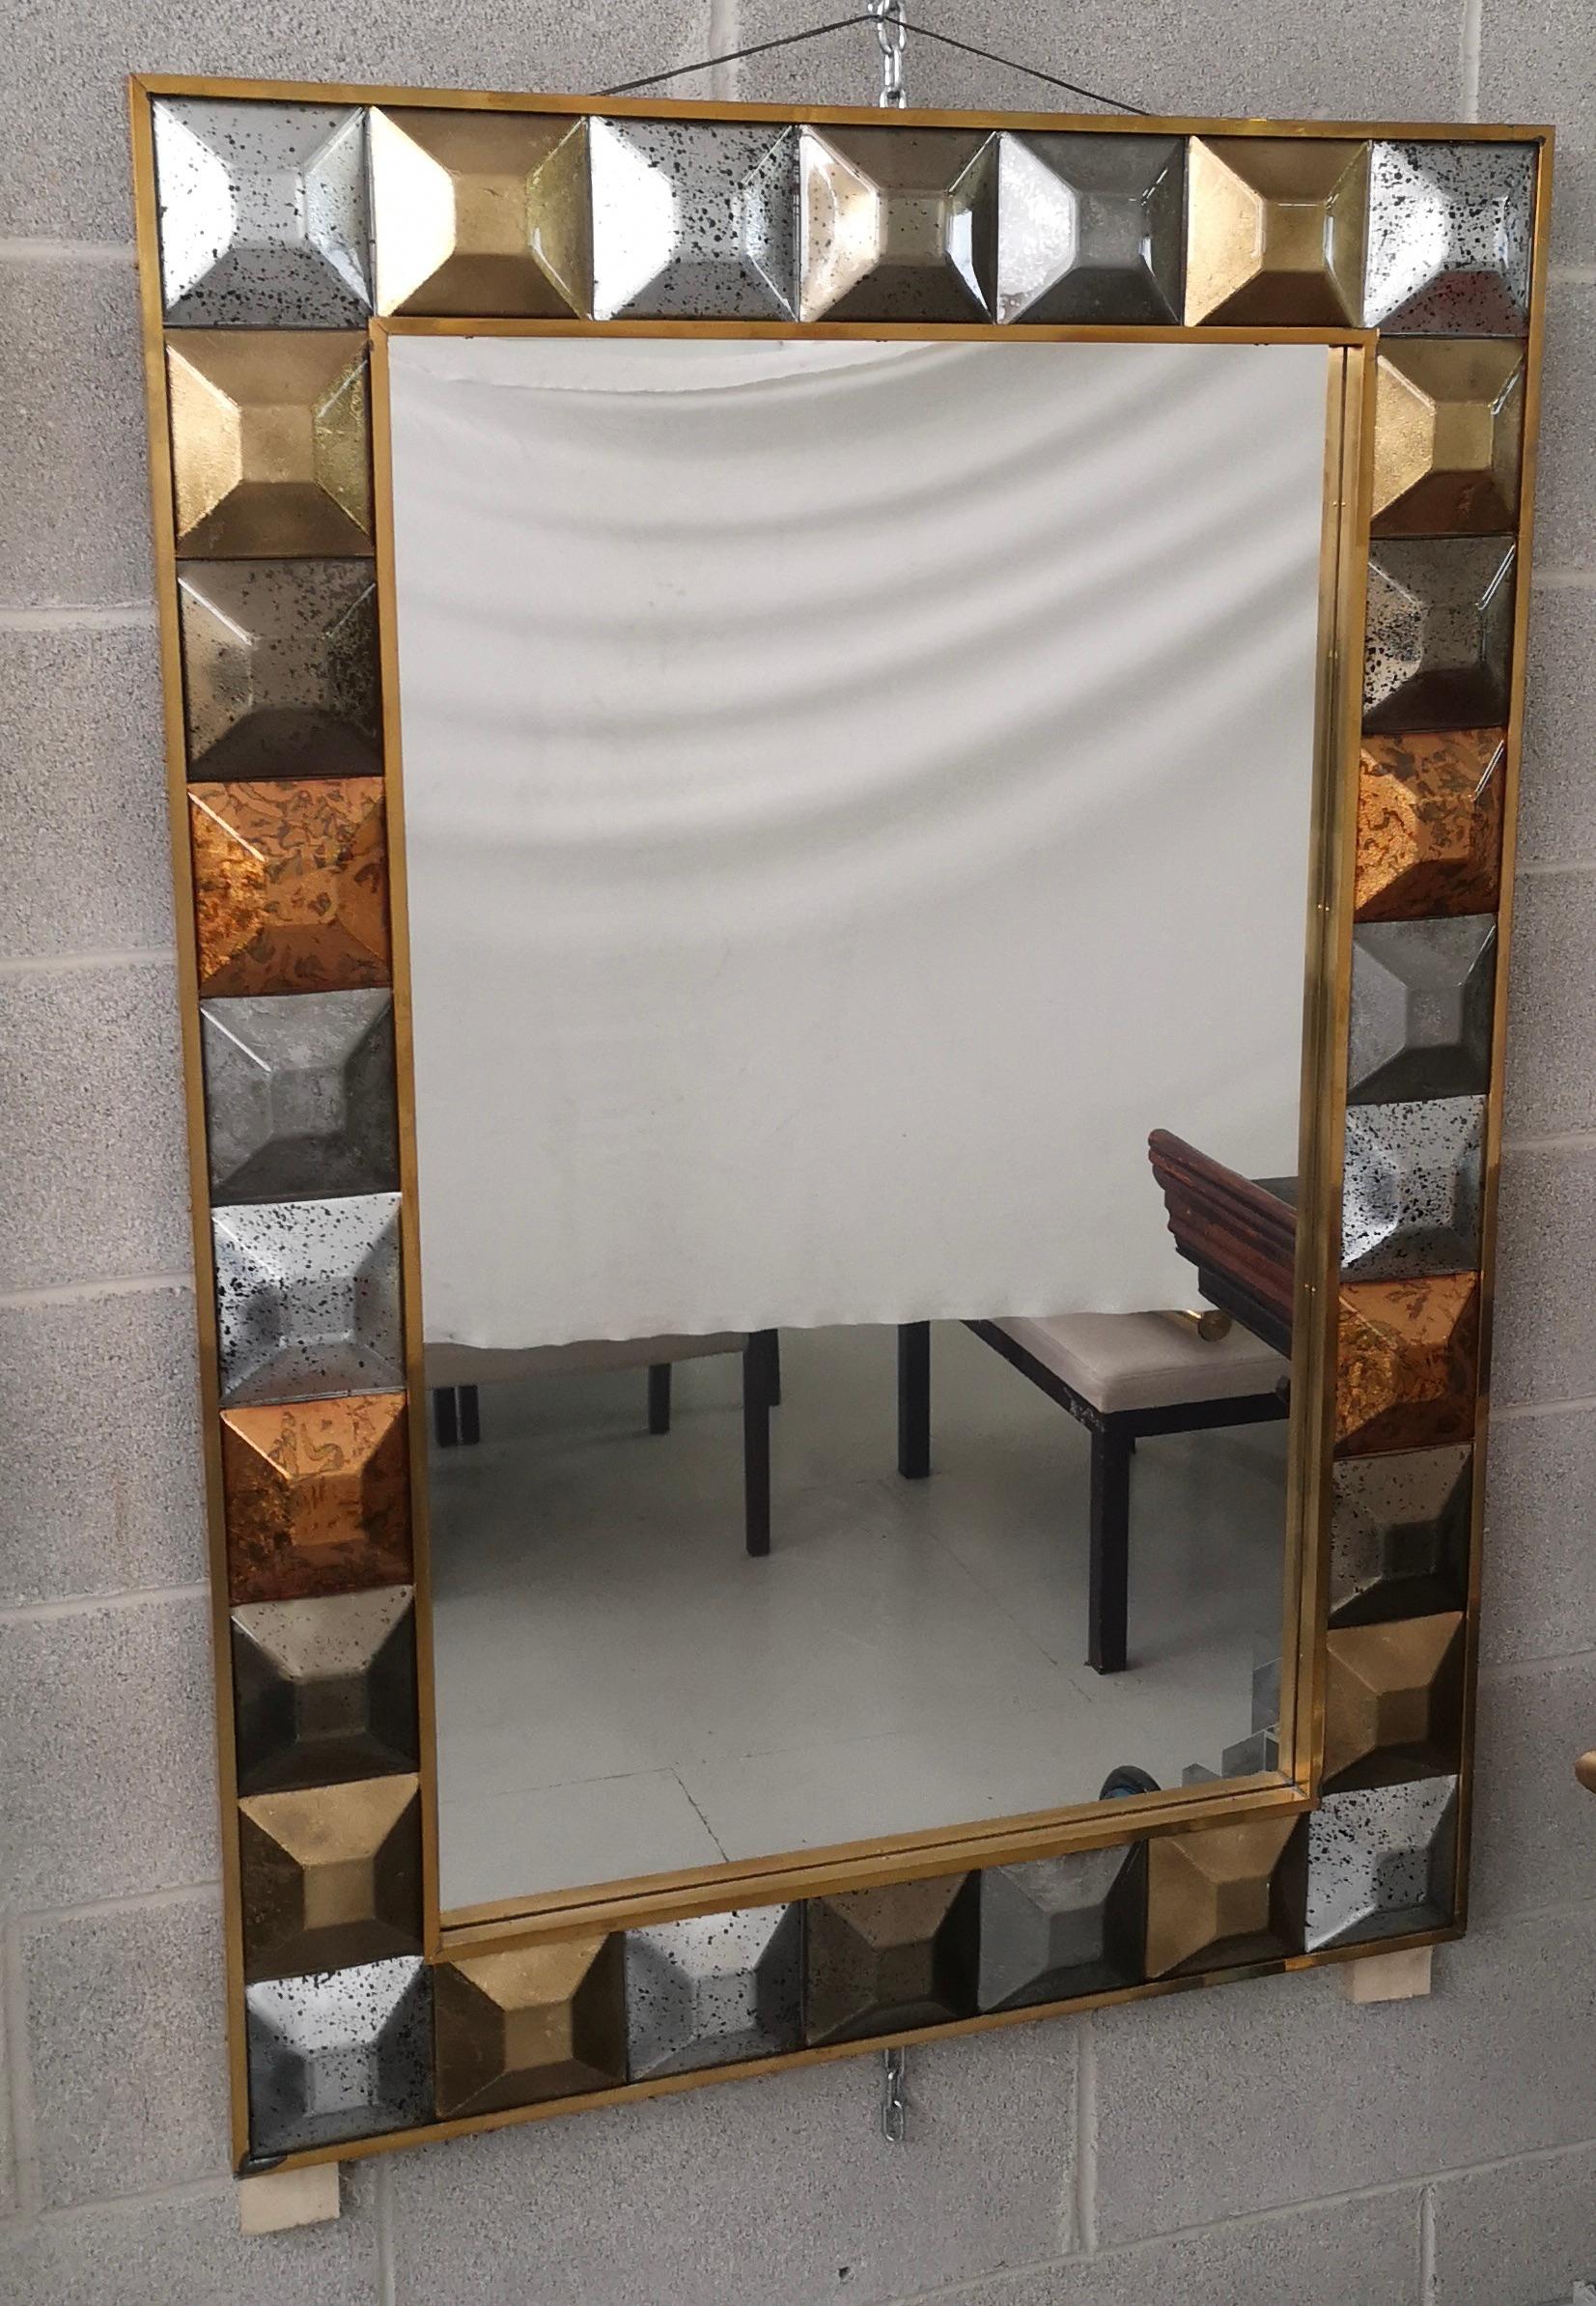 Ein starker messingfarbener Rahmen erreicht das Auge des Betrachters und lässt ihn verzaubert zurück; von Murano mehrfarbigem Kunstglas Wandspiegel. 

Die Struktur des Wandspiegels besteht aus Holz, in dem das mehrfarbige Murano-Glas untergebracht